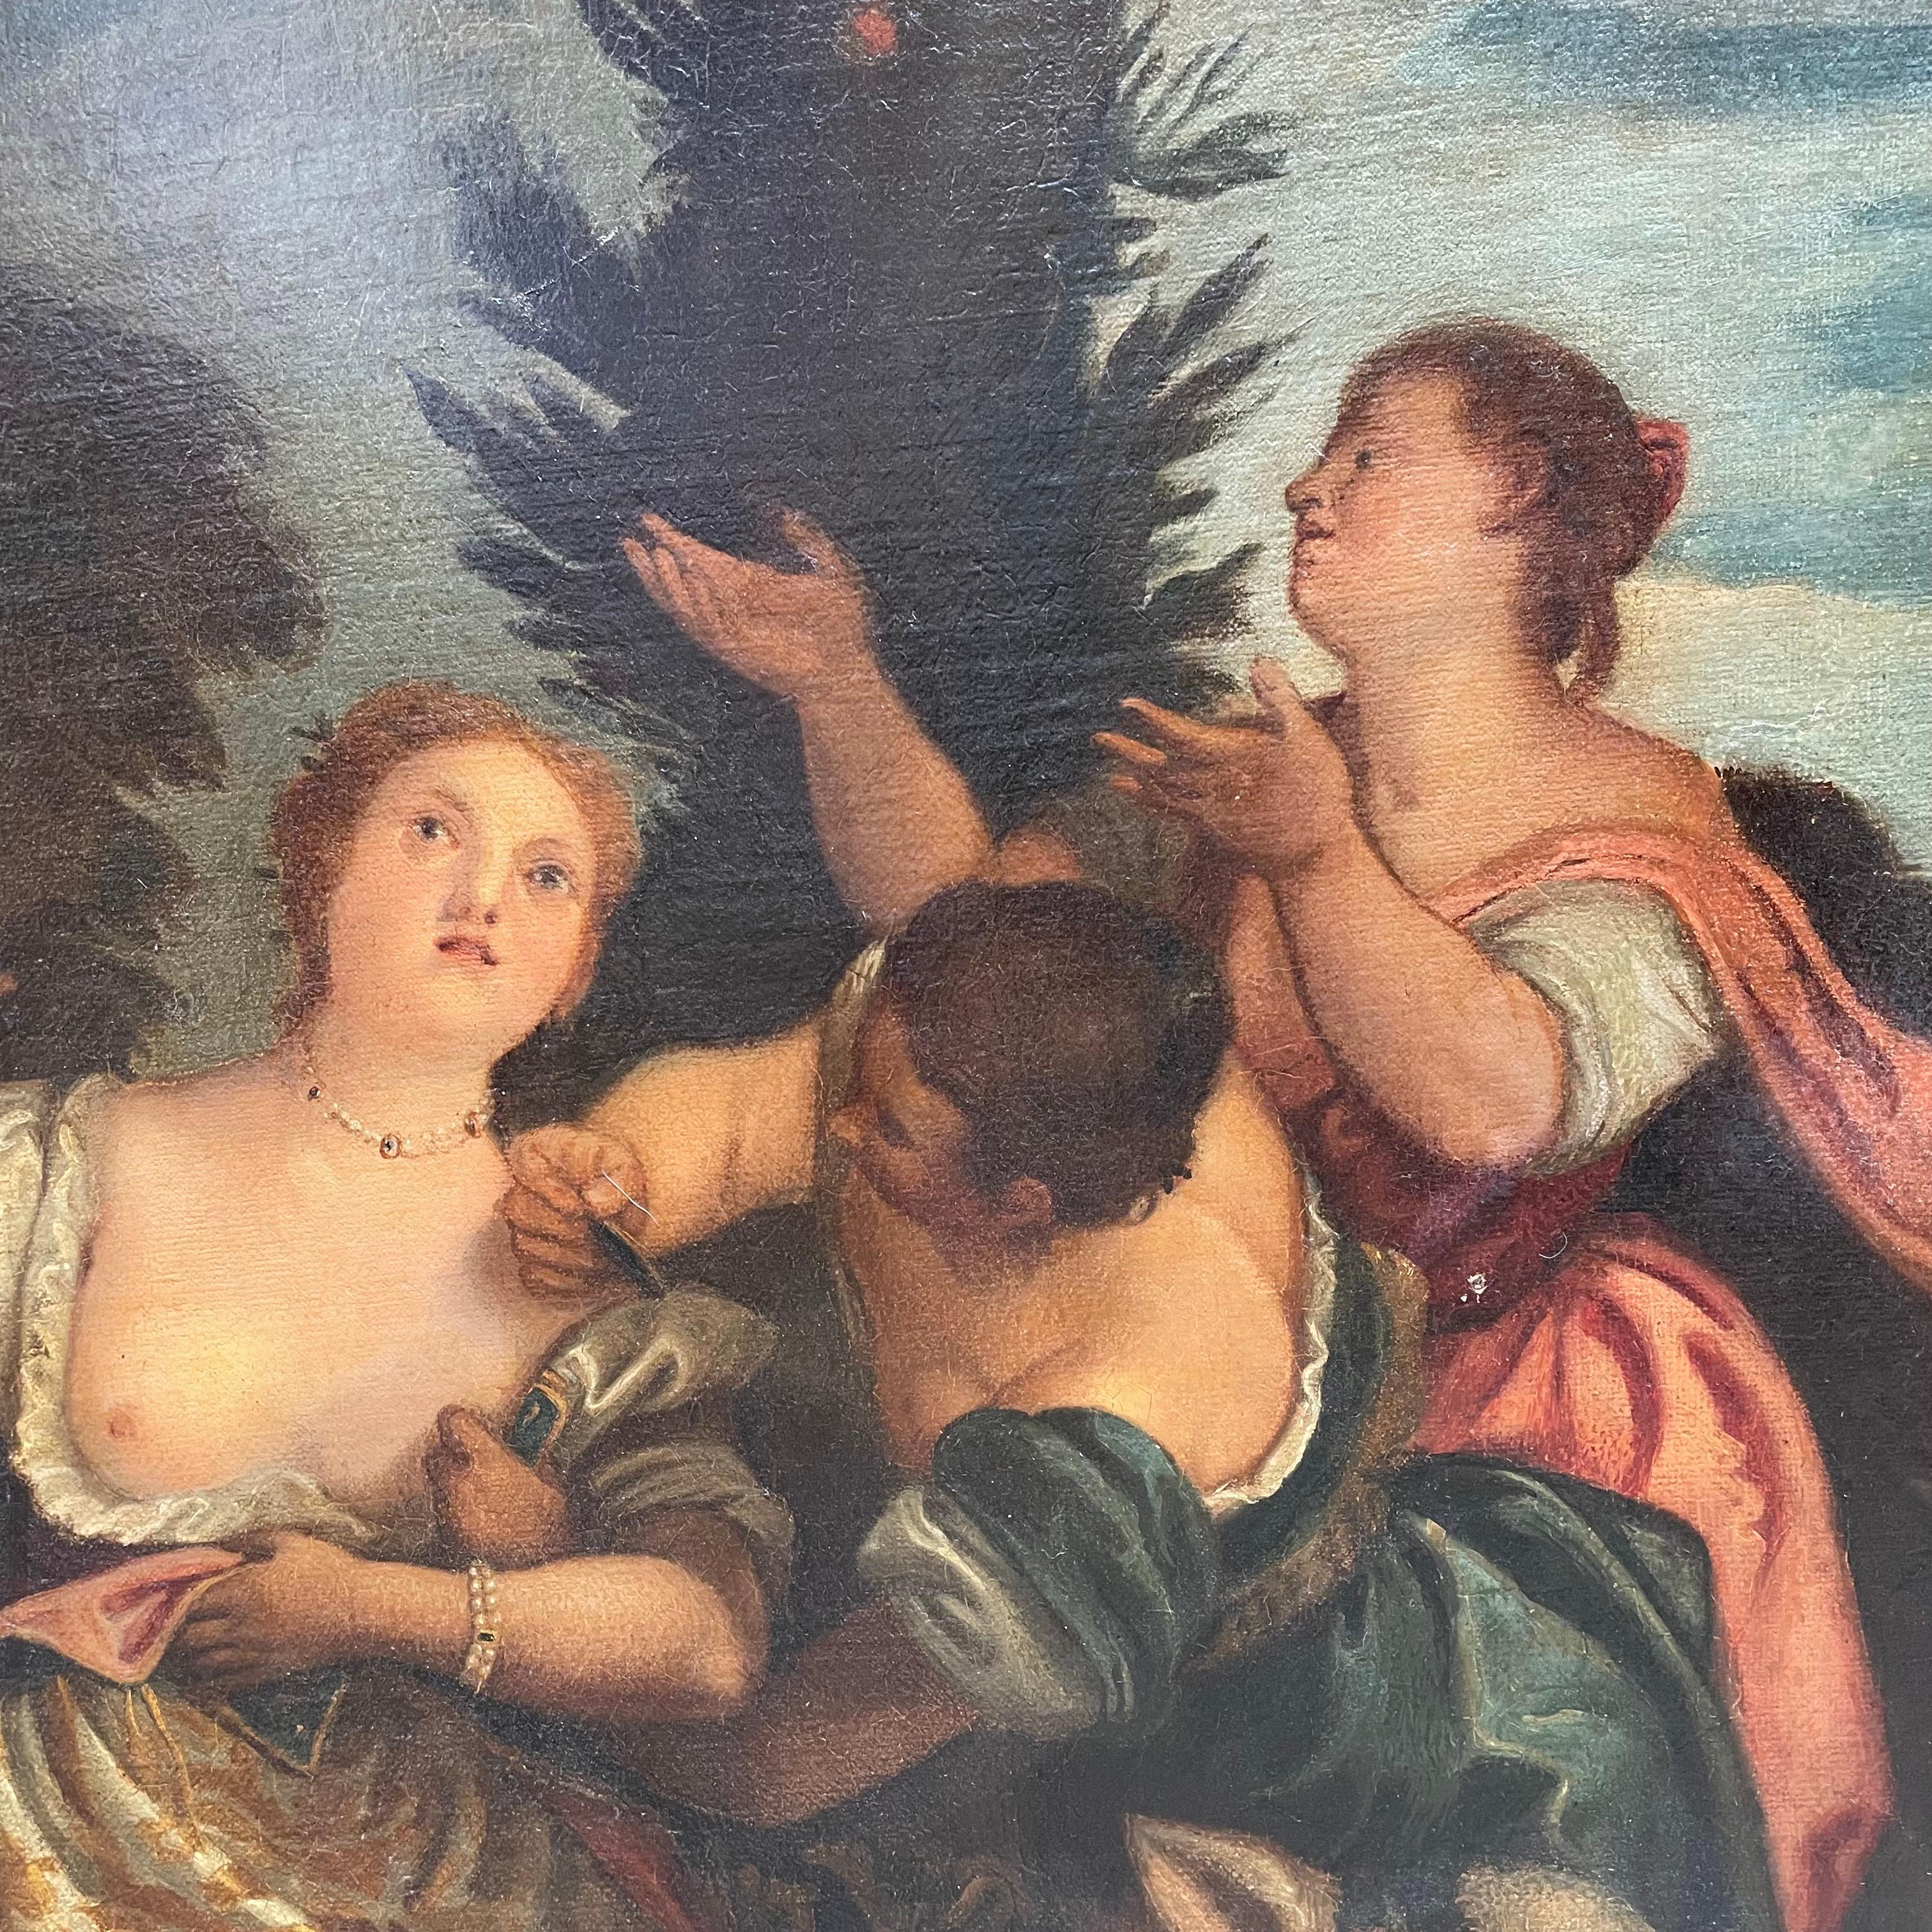 Ein großes italienisches Gemälde aus dem 19. Jahrhundert, das die Entführung der Europa darstellt, inspiriert von Ovids Geschichte in den Metamorphosen - der Vergewaltigung der Europa, der berühmten mythologischen Legende von Zeus und Europa, der